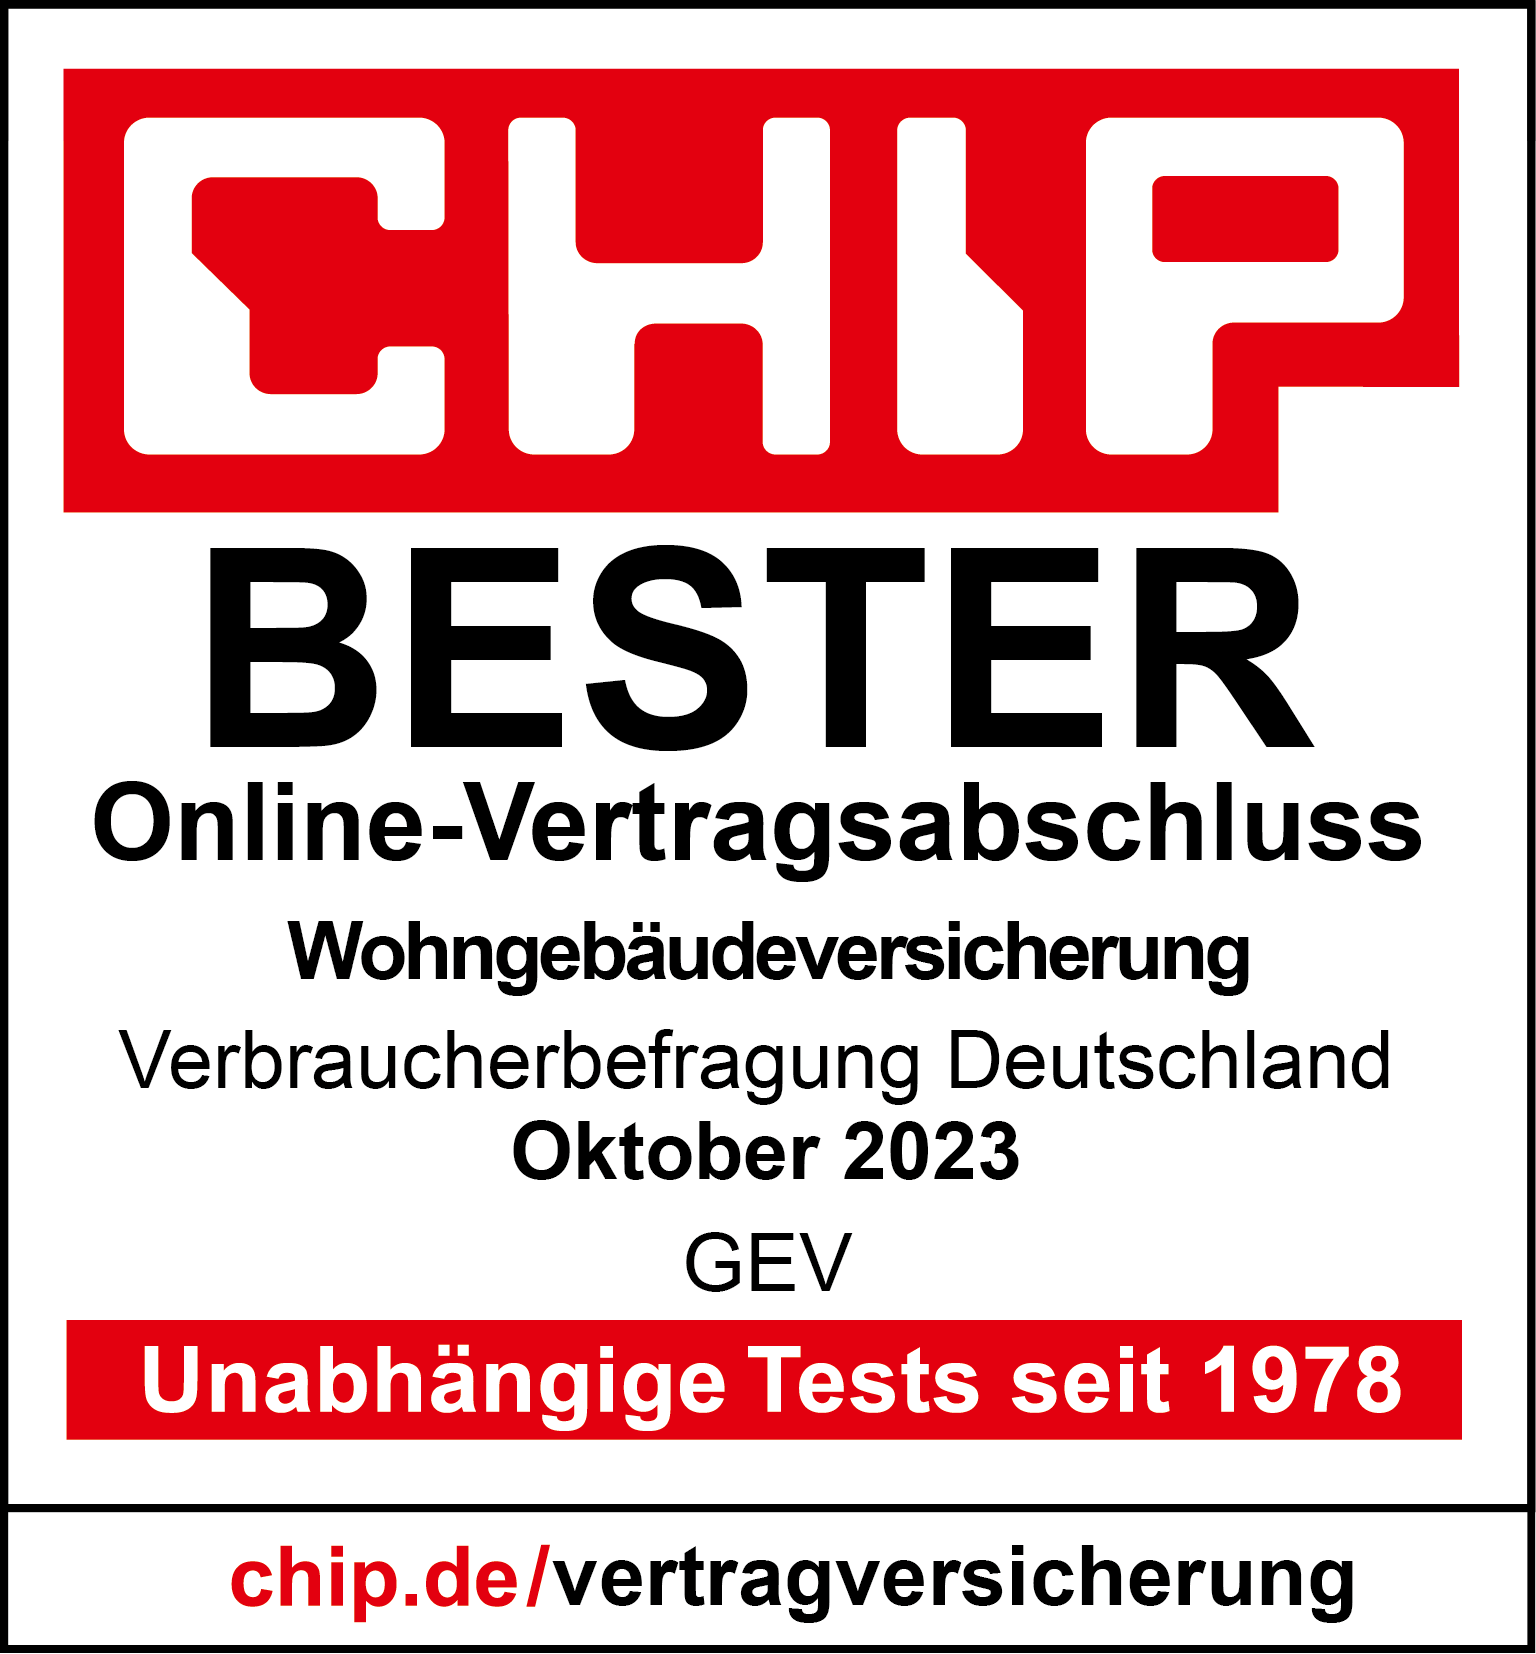 Auszeichnung von CHIP: BESTER Online-Vertragsabschluss